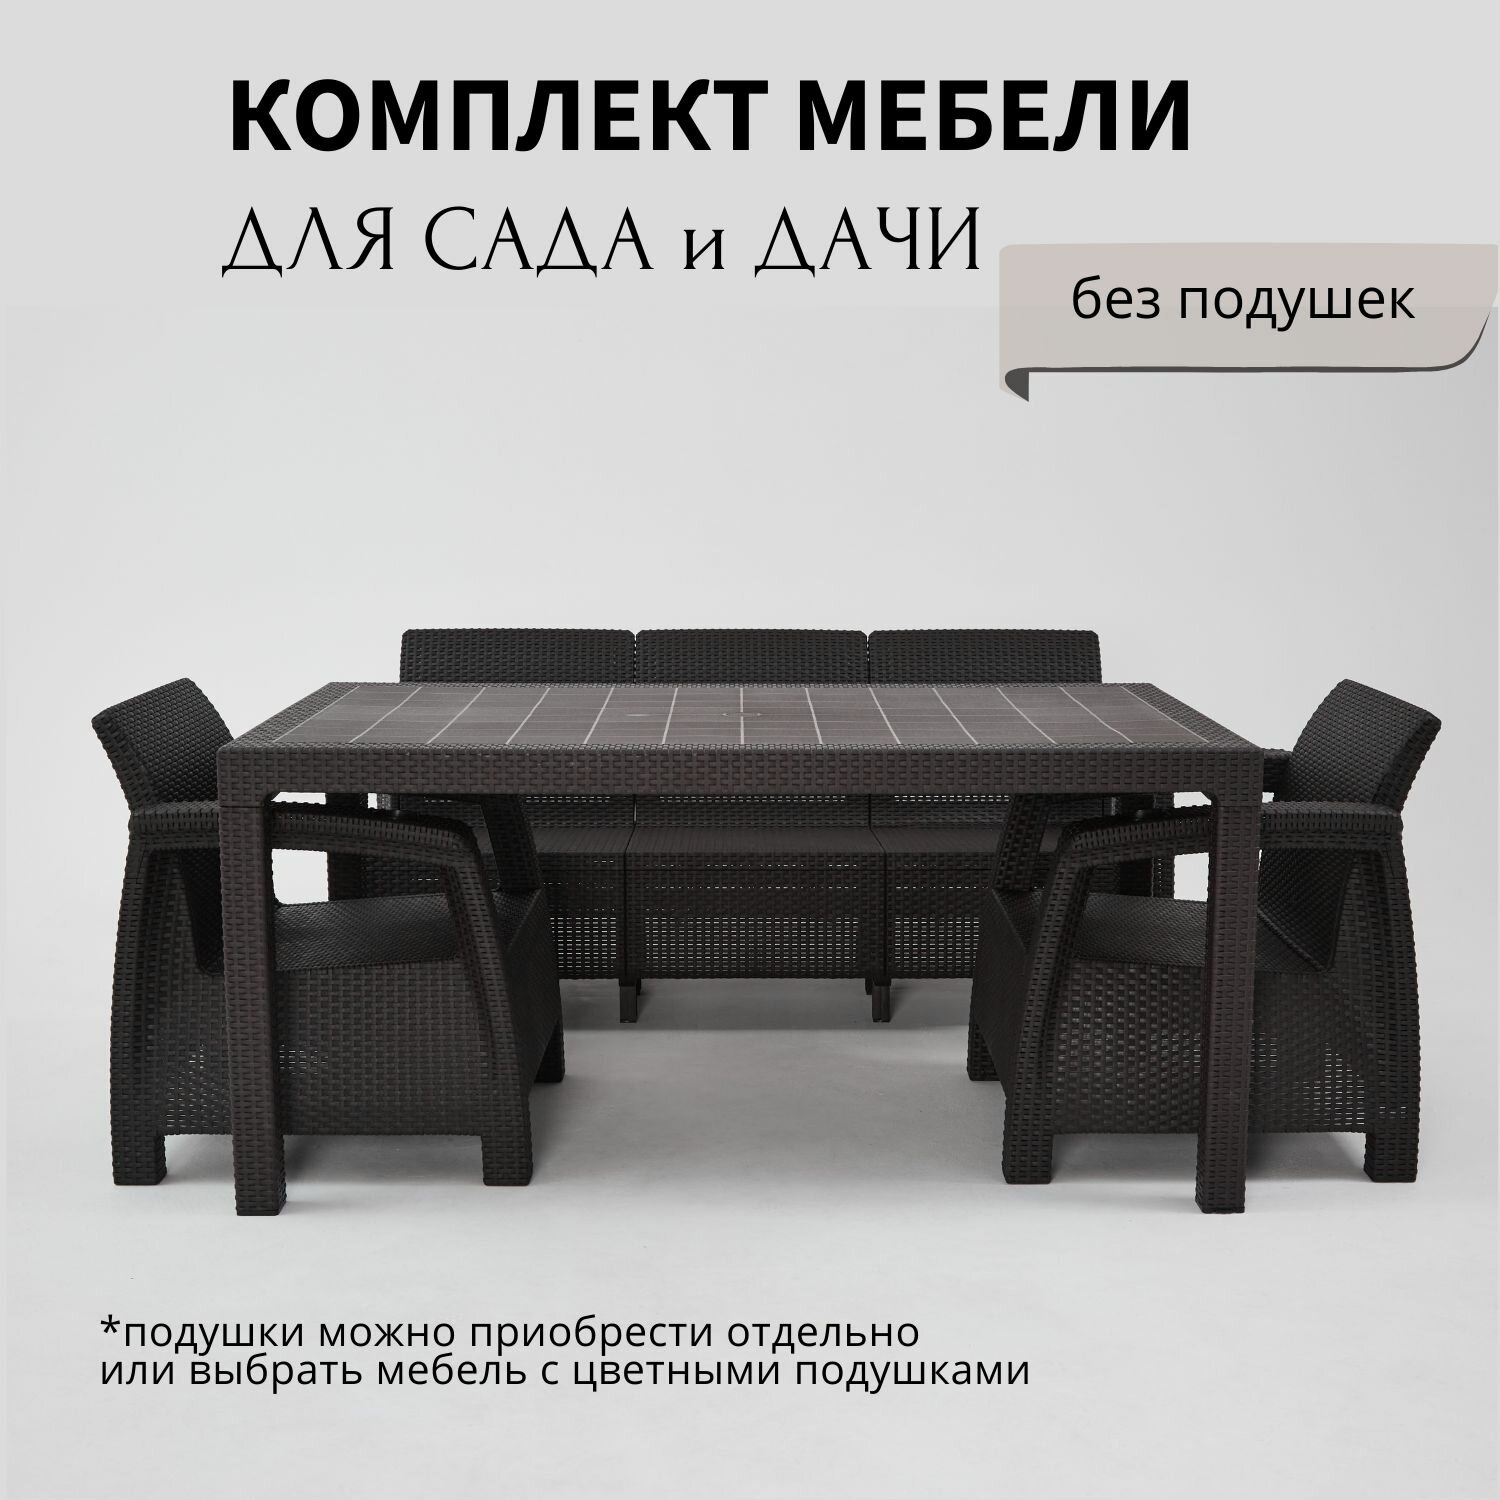 Комплект садовой мебели из ротанга HomlyGreen 3+1+1+обеденный стол 160х95, без подушек.